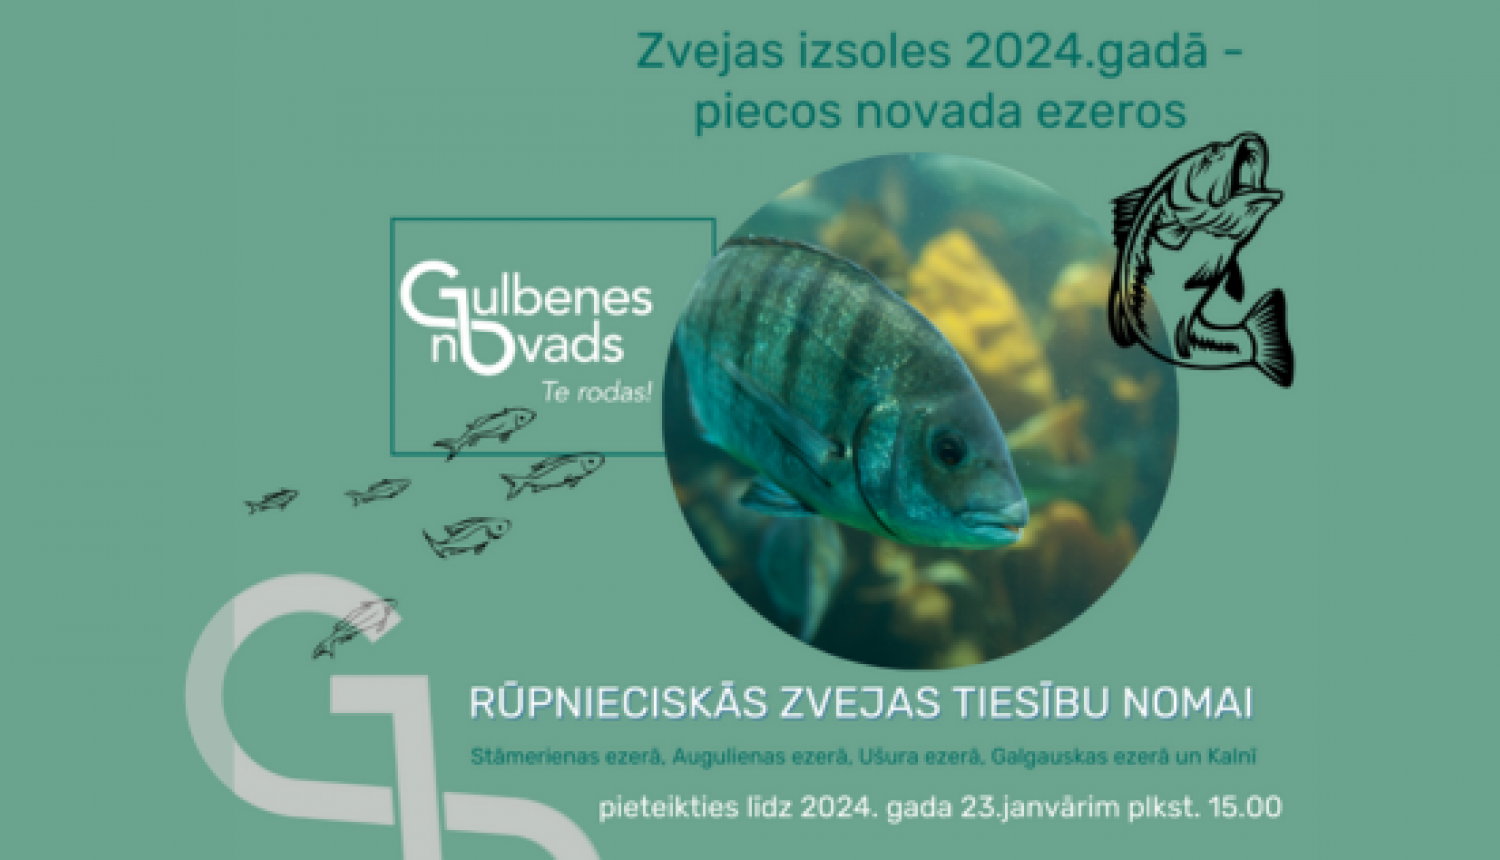 Attēls: rūpnieciskās zvejas izsoles 2024